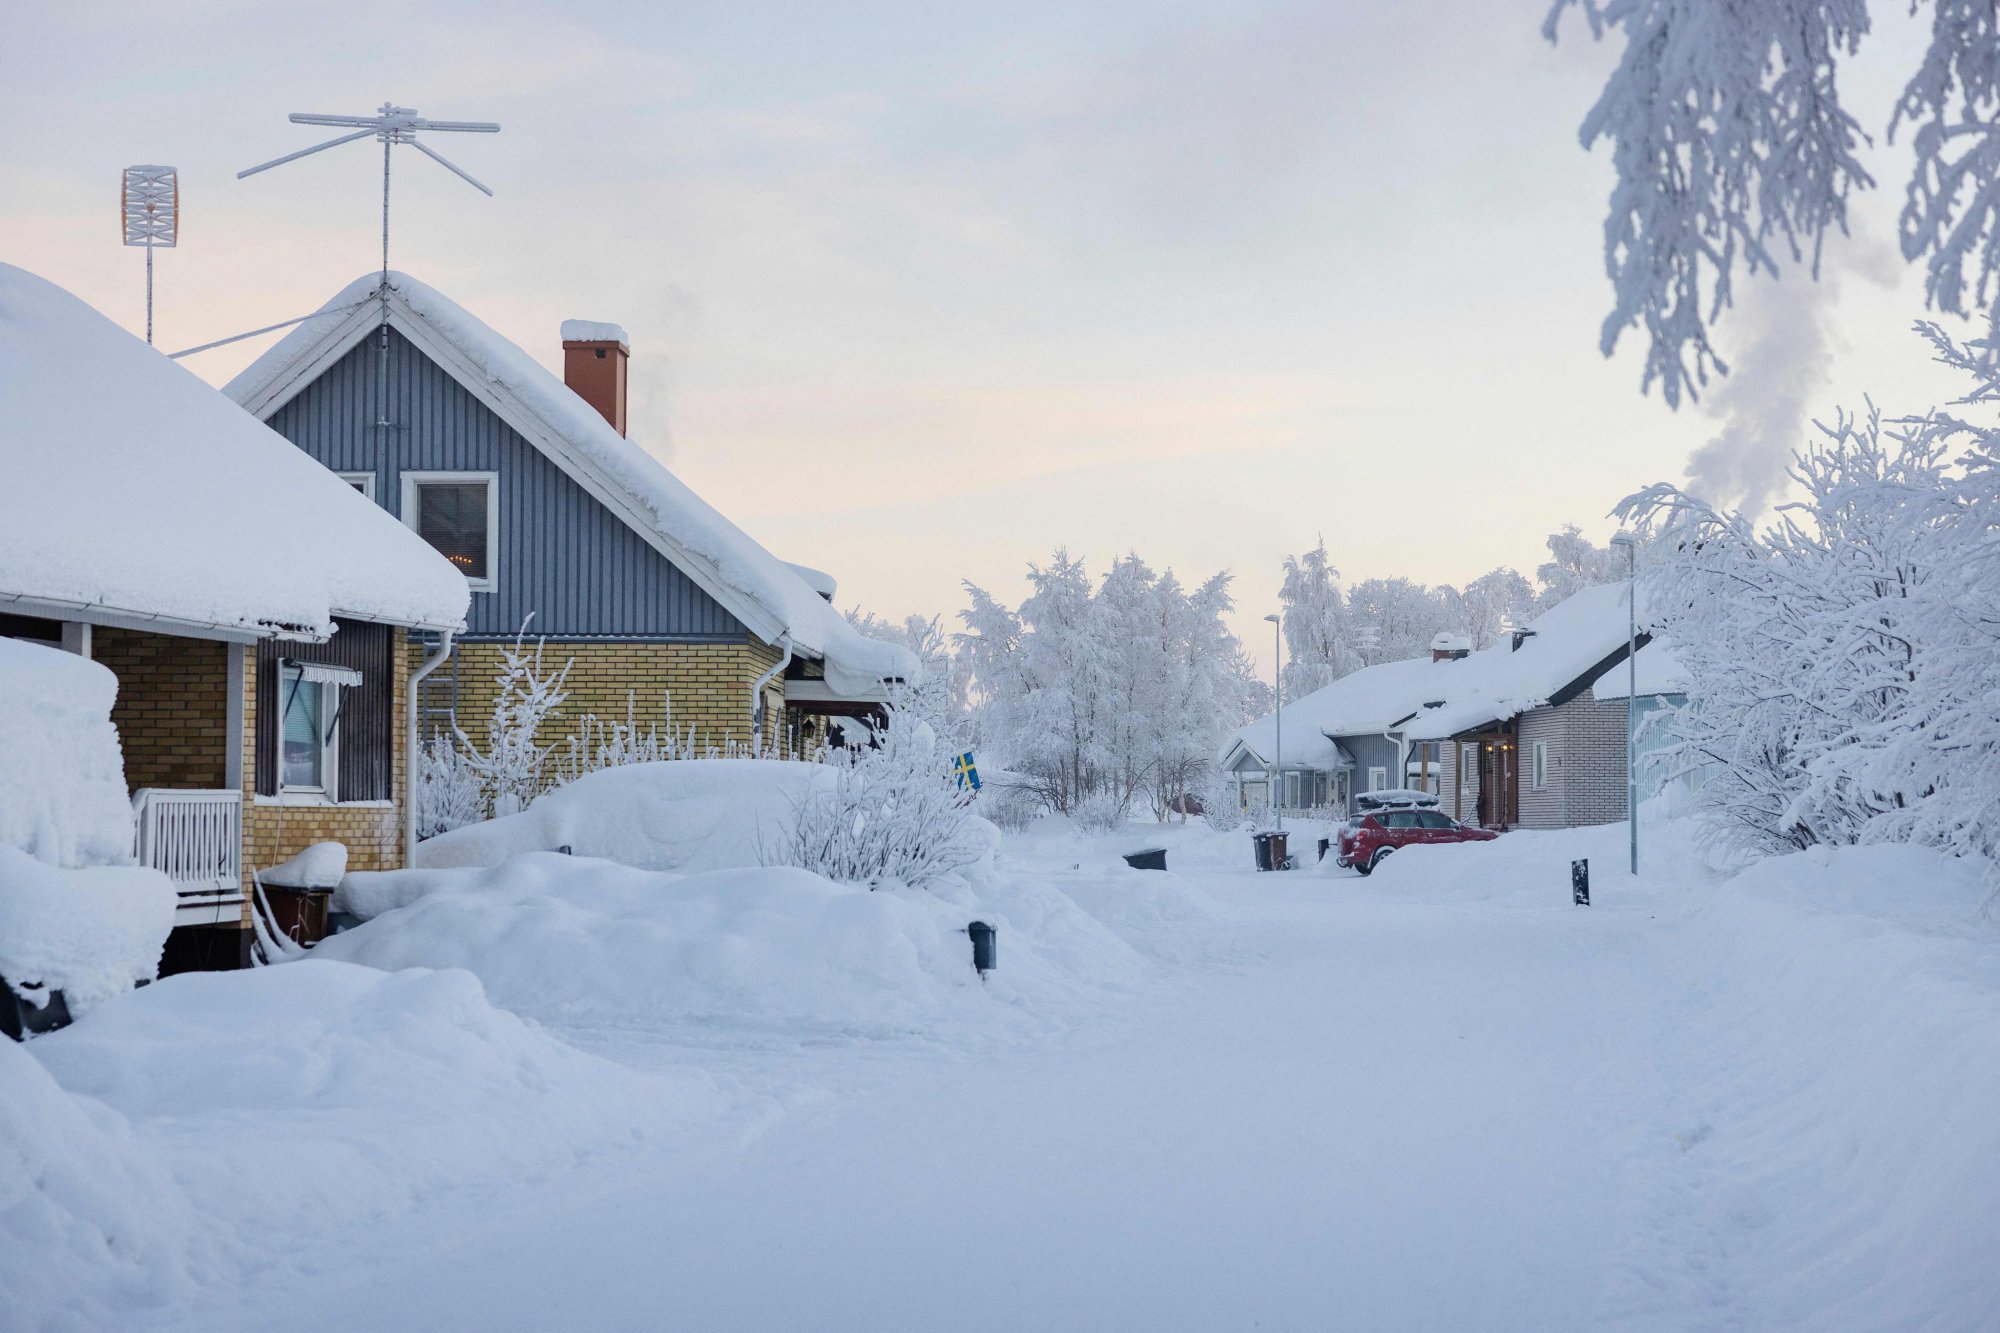 Πλημμύρες και χιόνια στη βορειοδυτική Ευρώπη - Ρεκόρ ψύχους στη Σουηδία με θερμοκρασίες -40